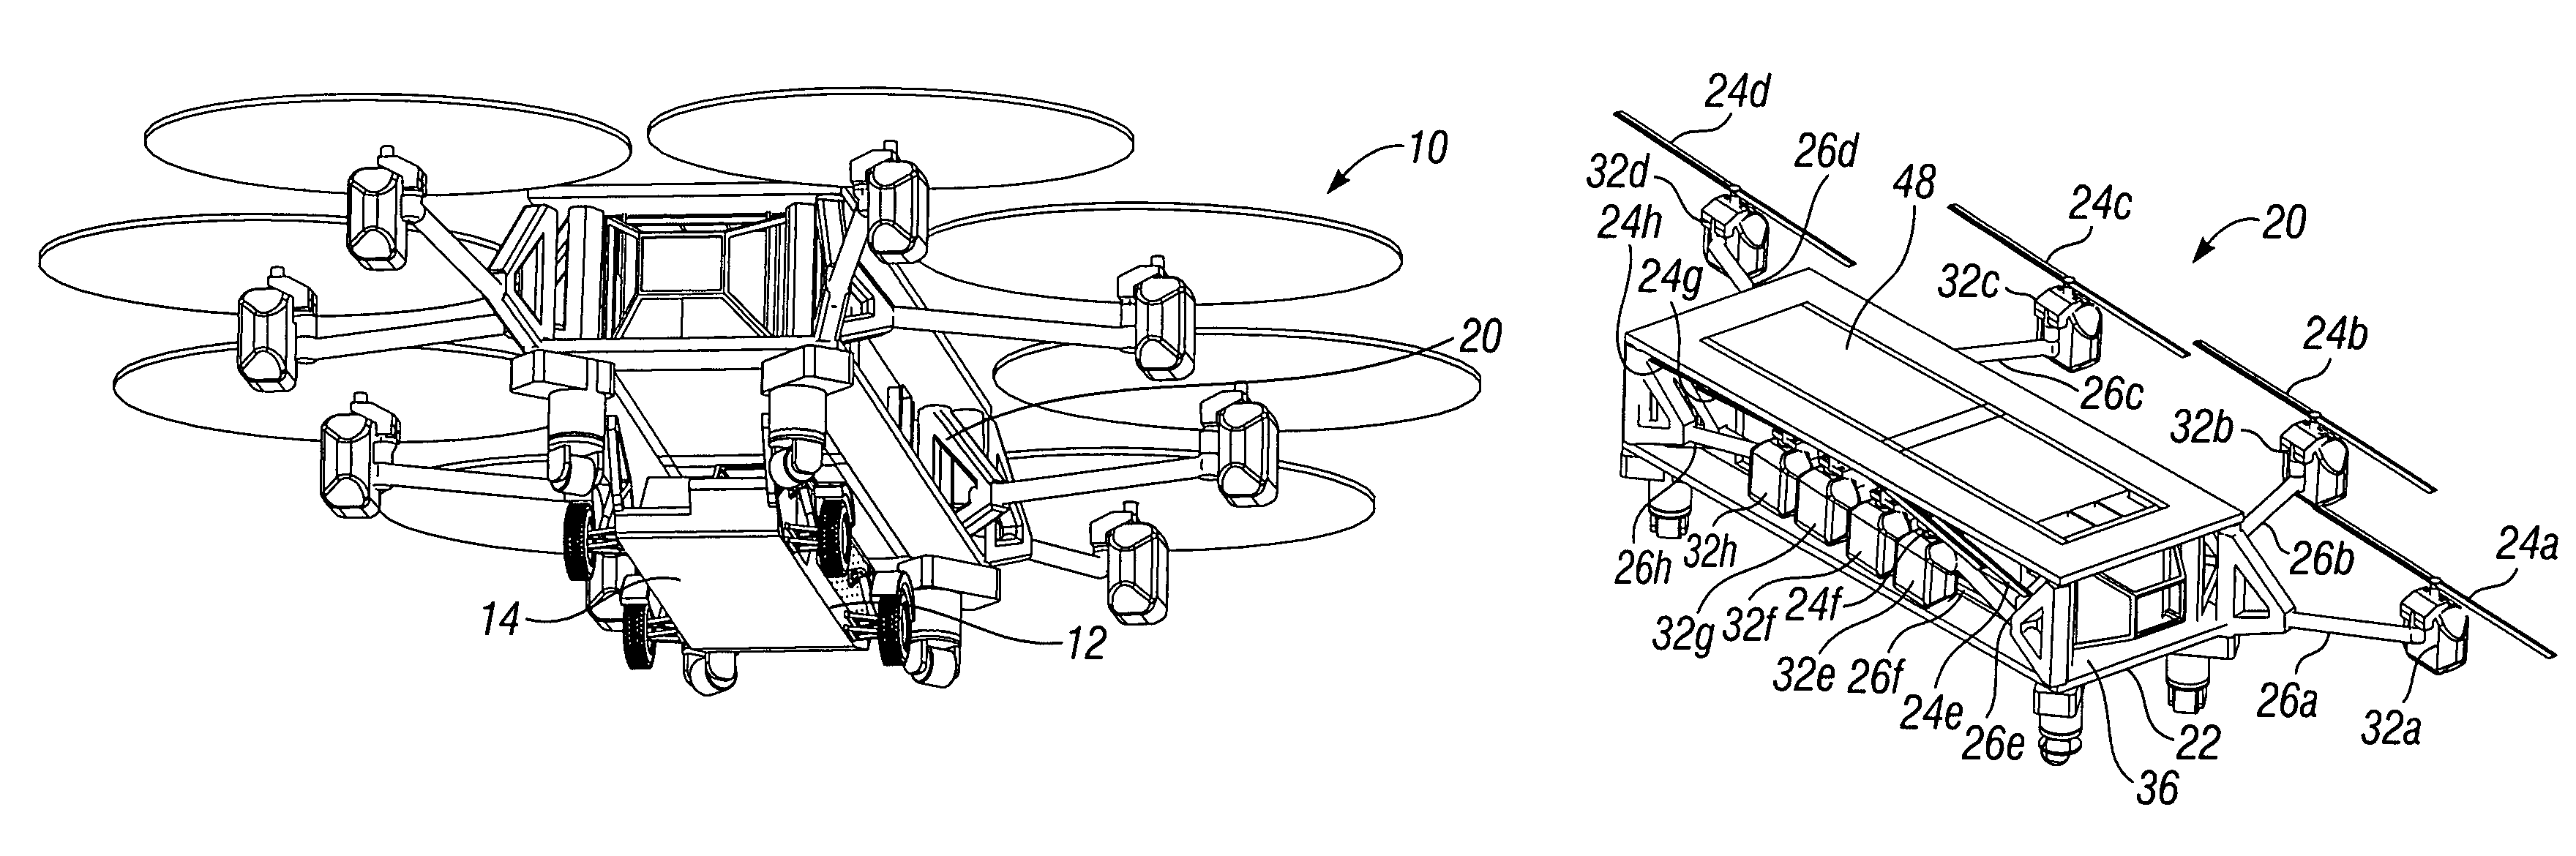 Modular flying vehicle